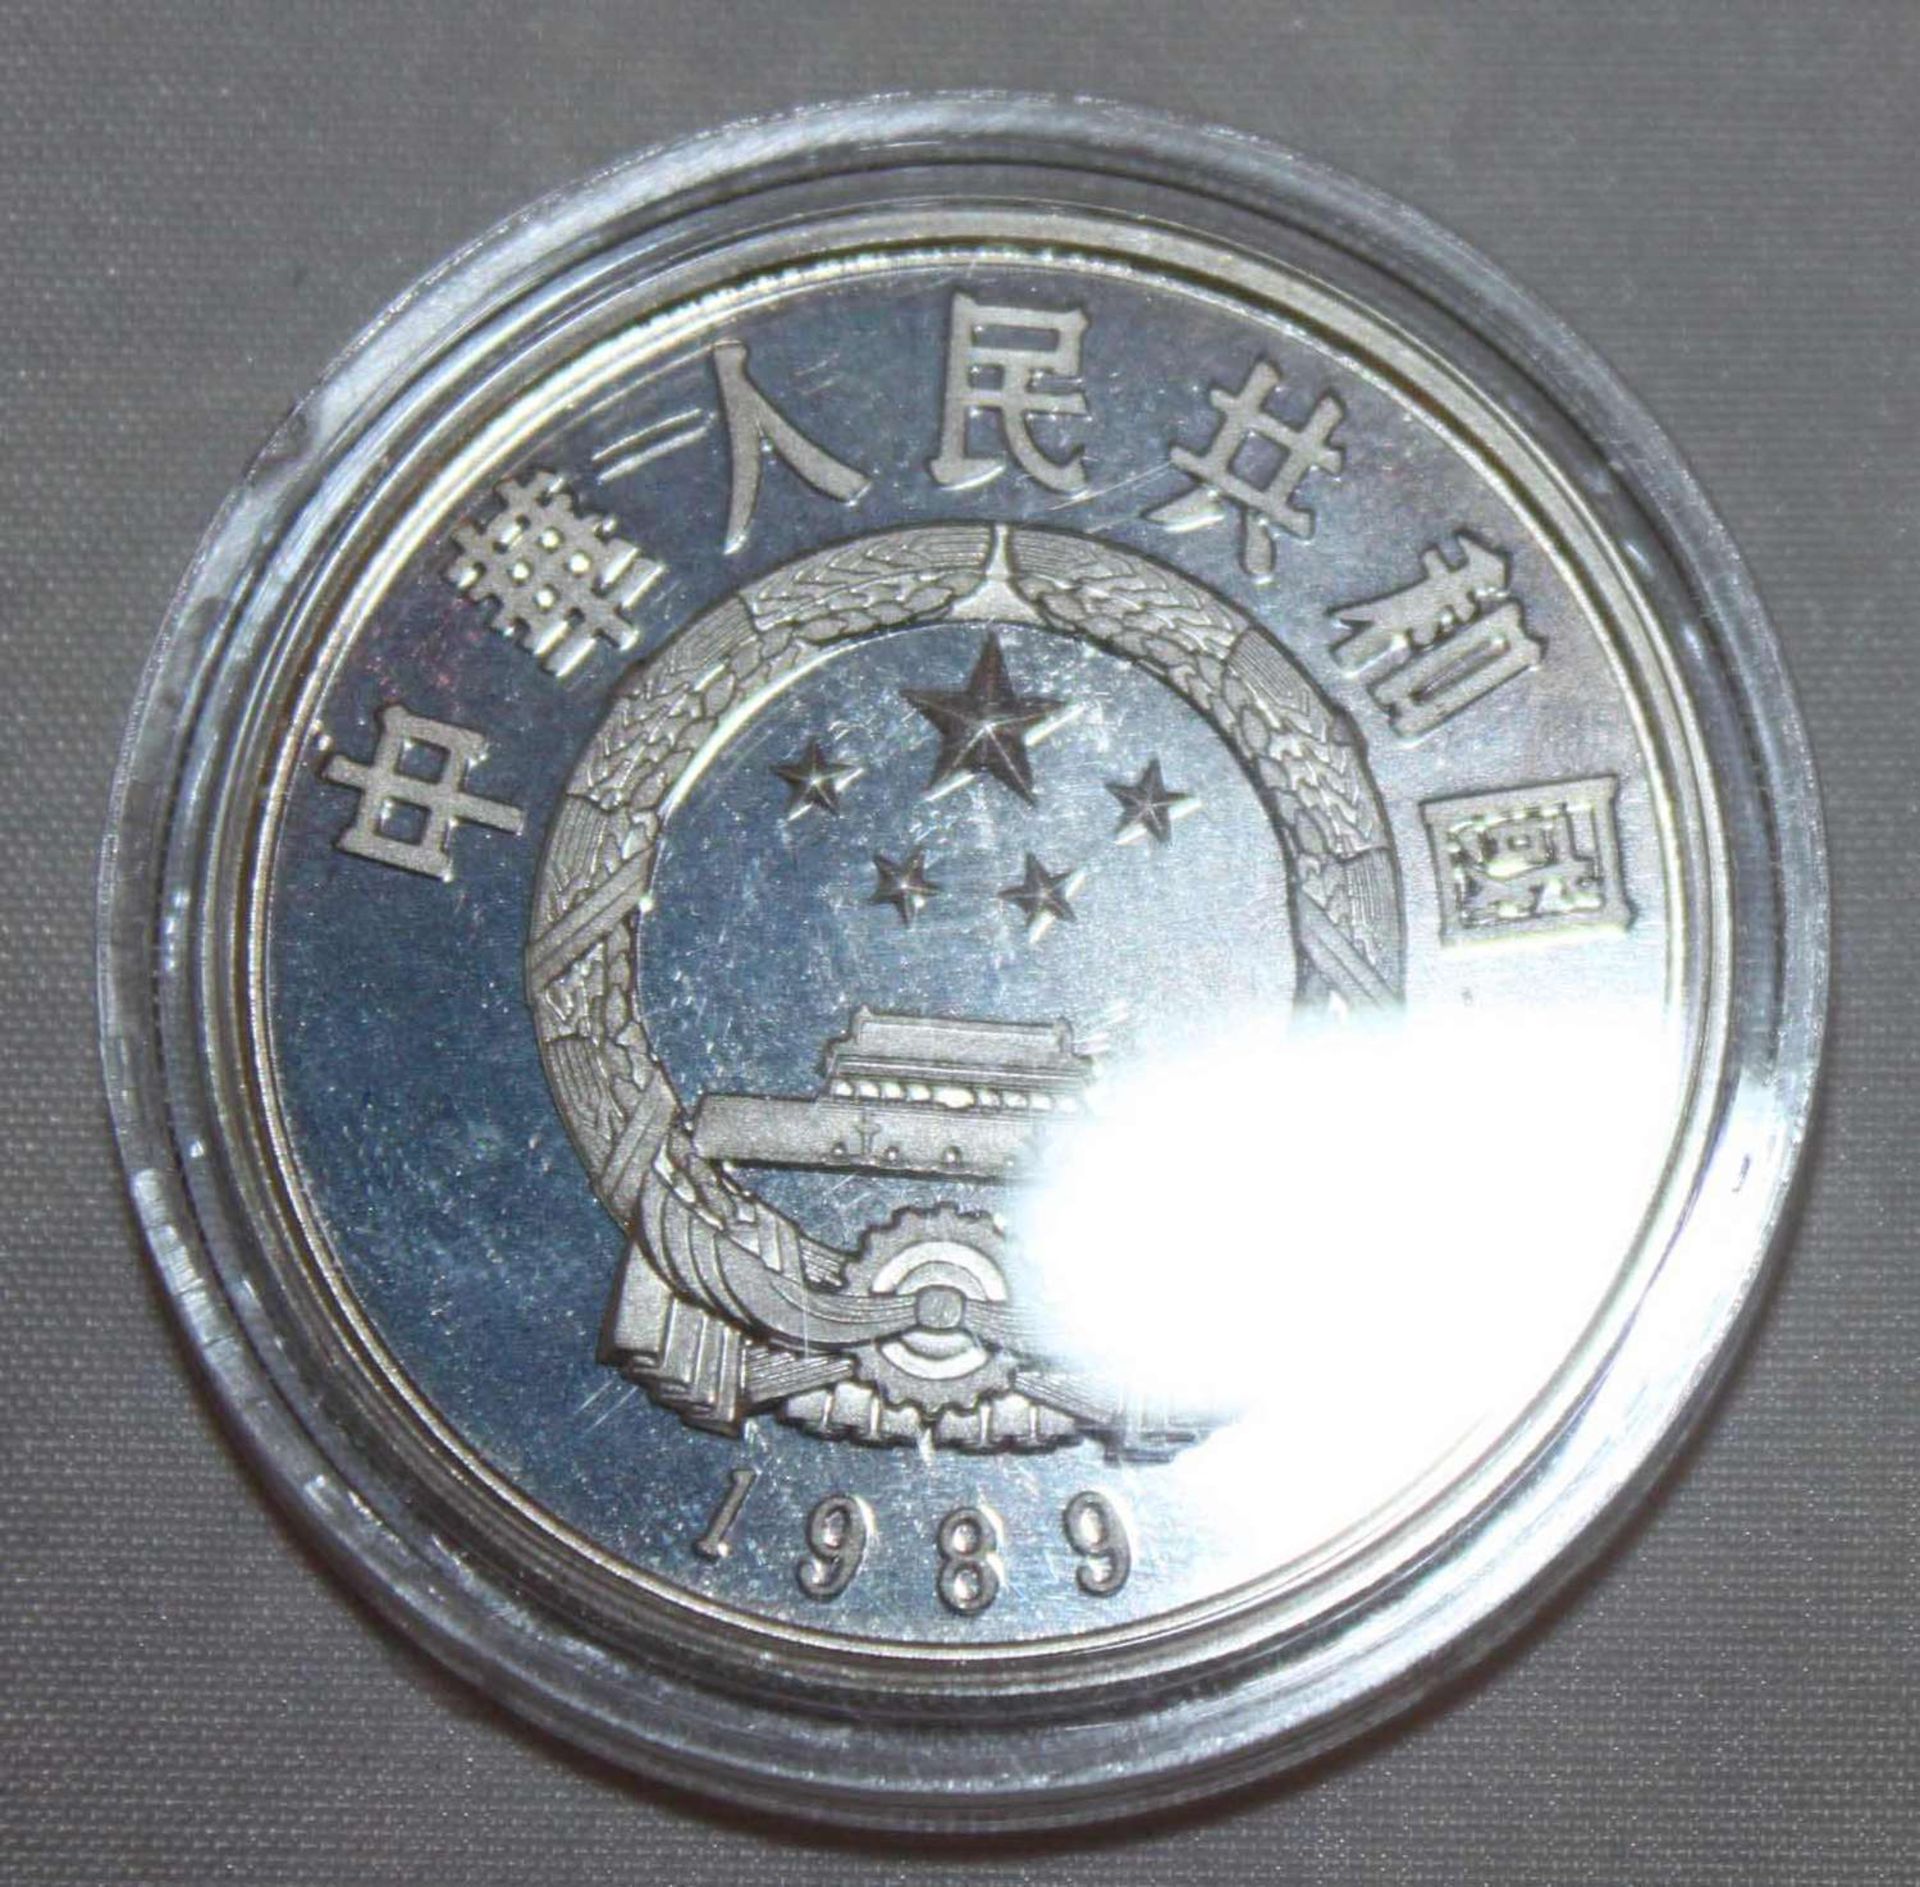 China 1989, 5 Yuan - Silbermünze "Huan Dao Po". Silber 900. Gewicht: 22,2 gr.. In Kapsel. Erhaltung: - Image 2 of 3